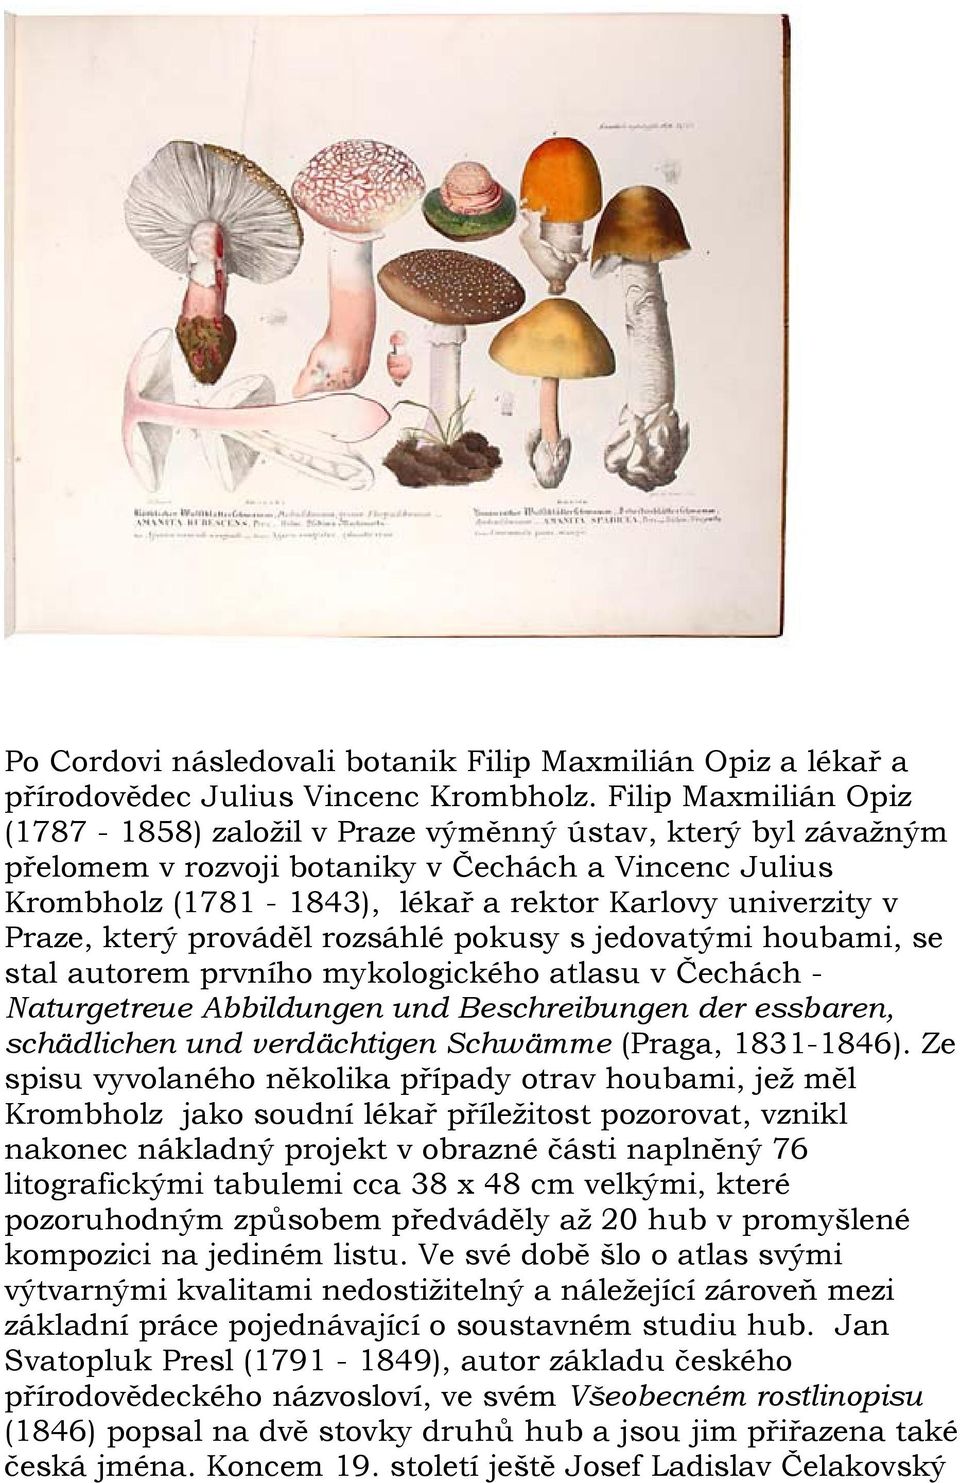 Praze, který prováděl rozsáhlé pokusy s jedovatými houbami, se stal autorem prvního mykologického atlasu v Čechách - Naturgetreue Abbildungen und Beschreibungen der essbaren, schädlichen und